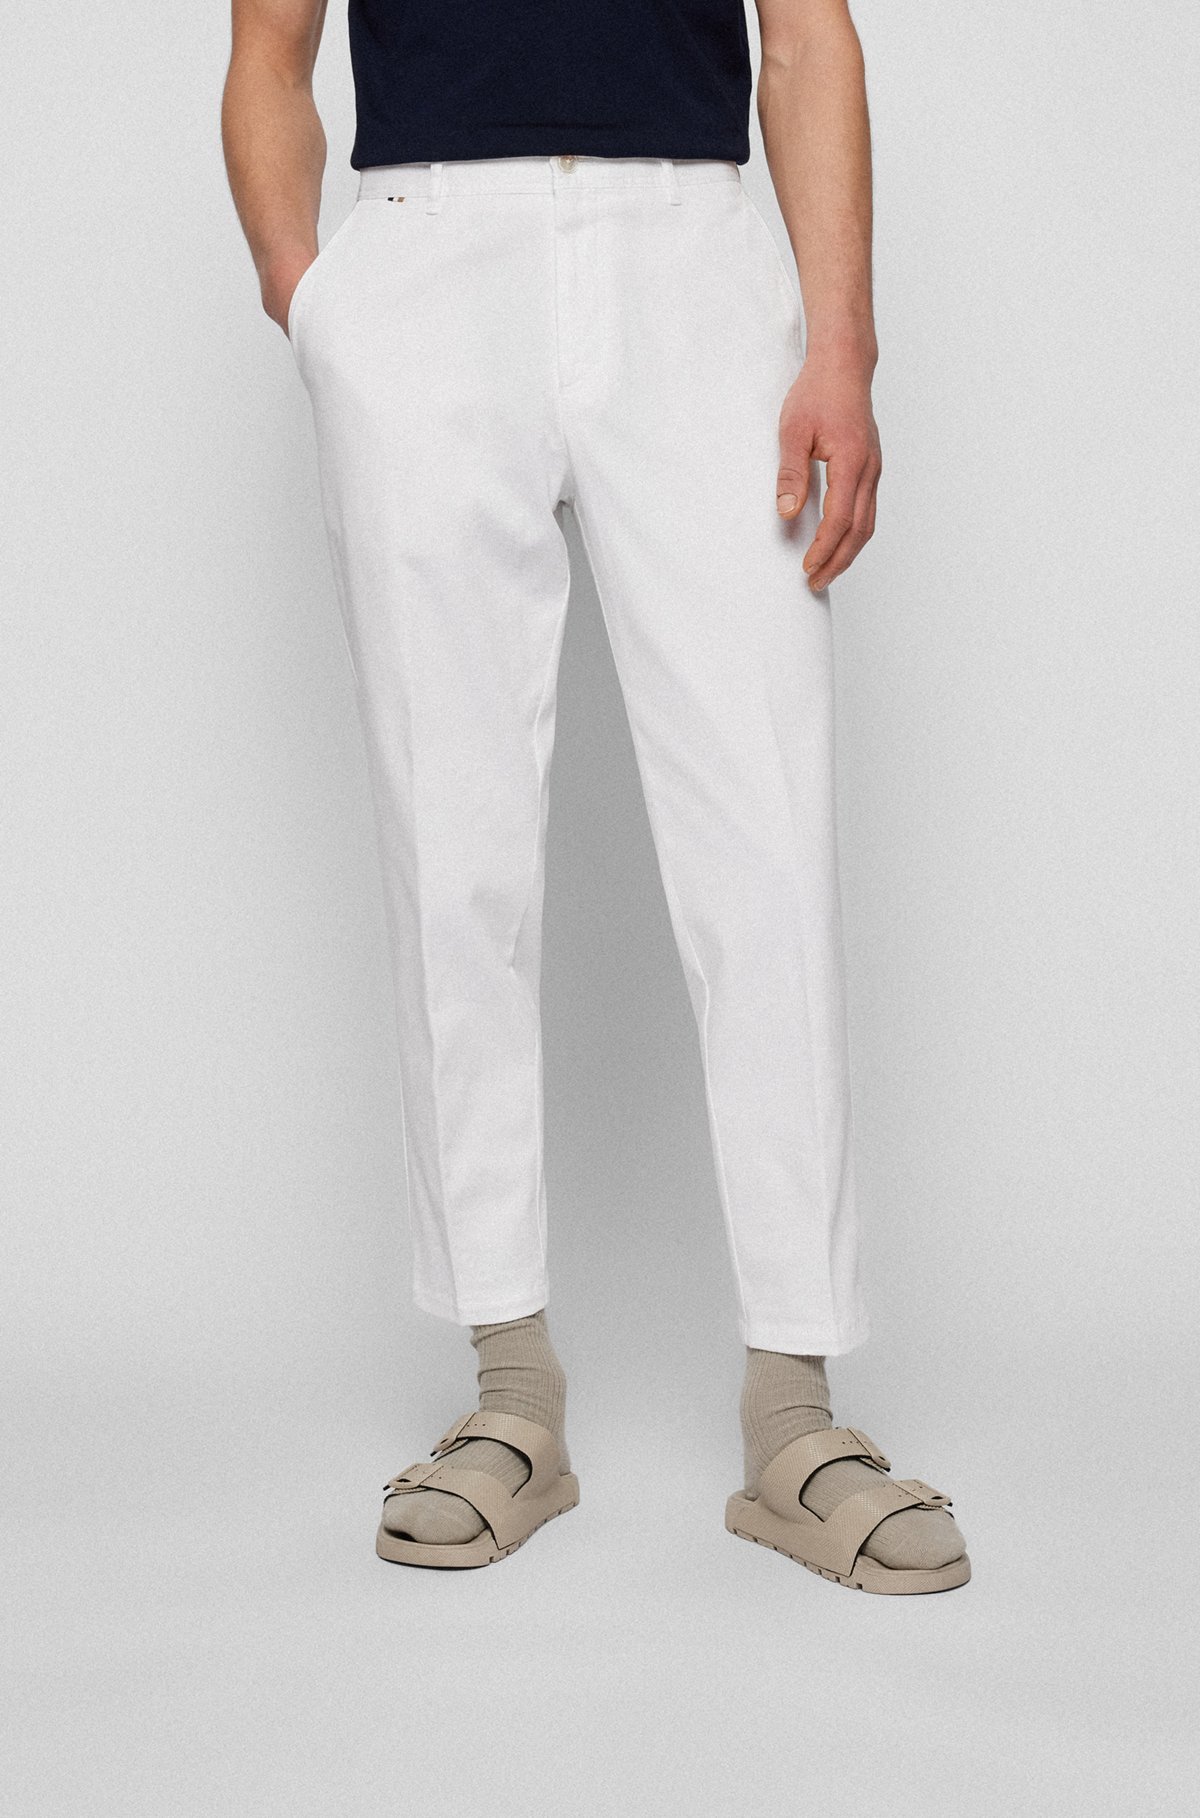 Pantalones tapered fit en algodón elástico microestampado, Blanco